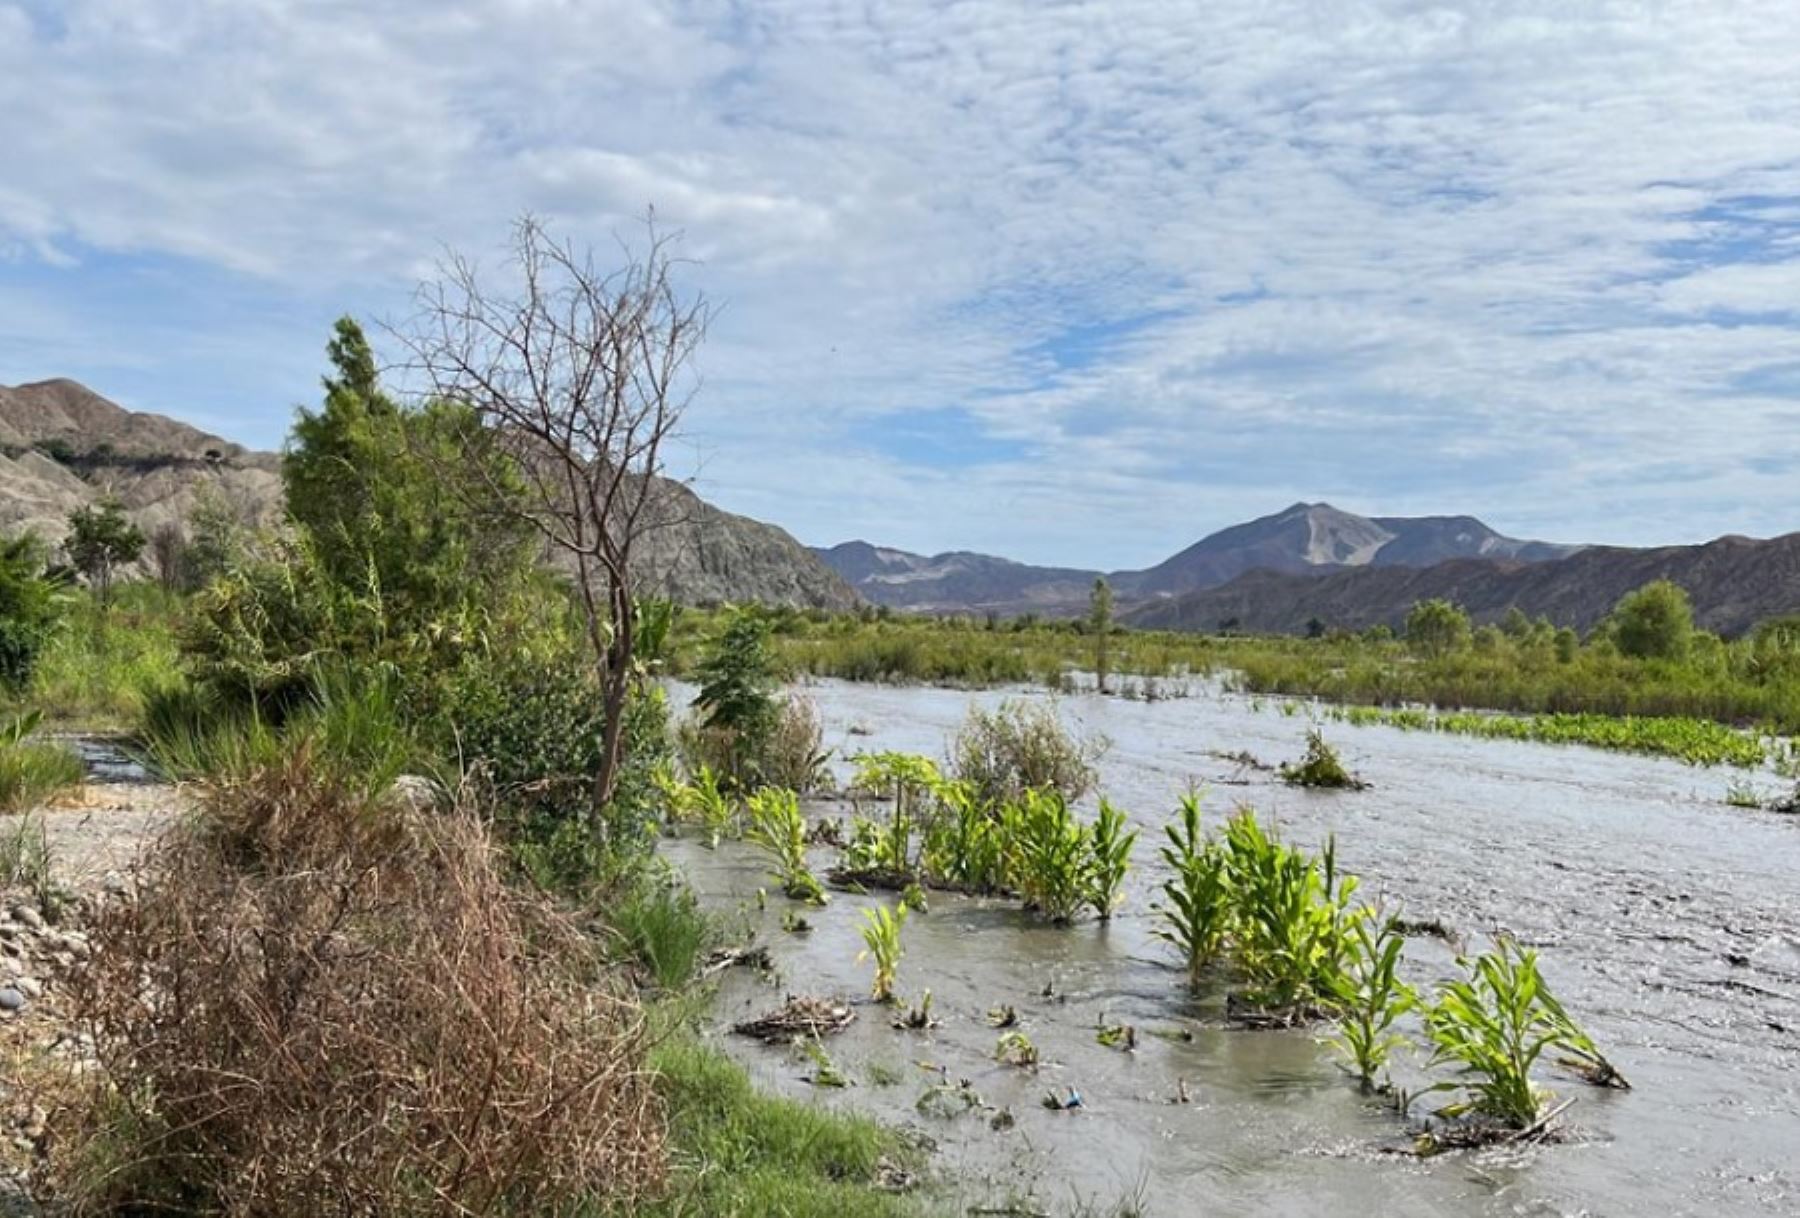 El río Santa, en la región Áncash, se desbordó e inundó cultivos en la localidad de Vinzos, distrito y provincia del Santa. El río incrementó su caudal por las constantes precipitaciones pluviales que se registraron en la zona sierra de la región, informó el Centro de Operaciones de Emergencia Regional.